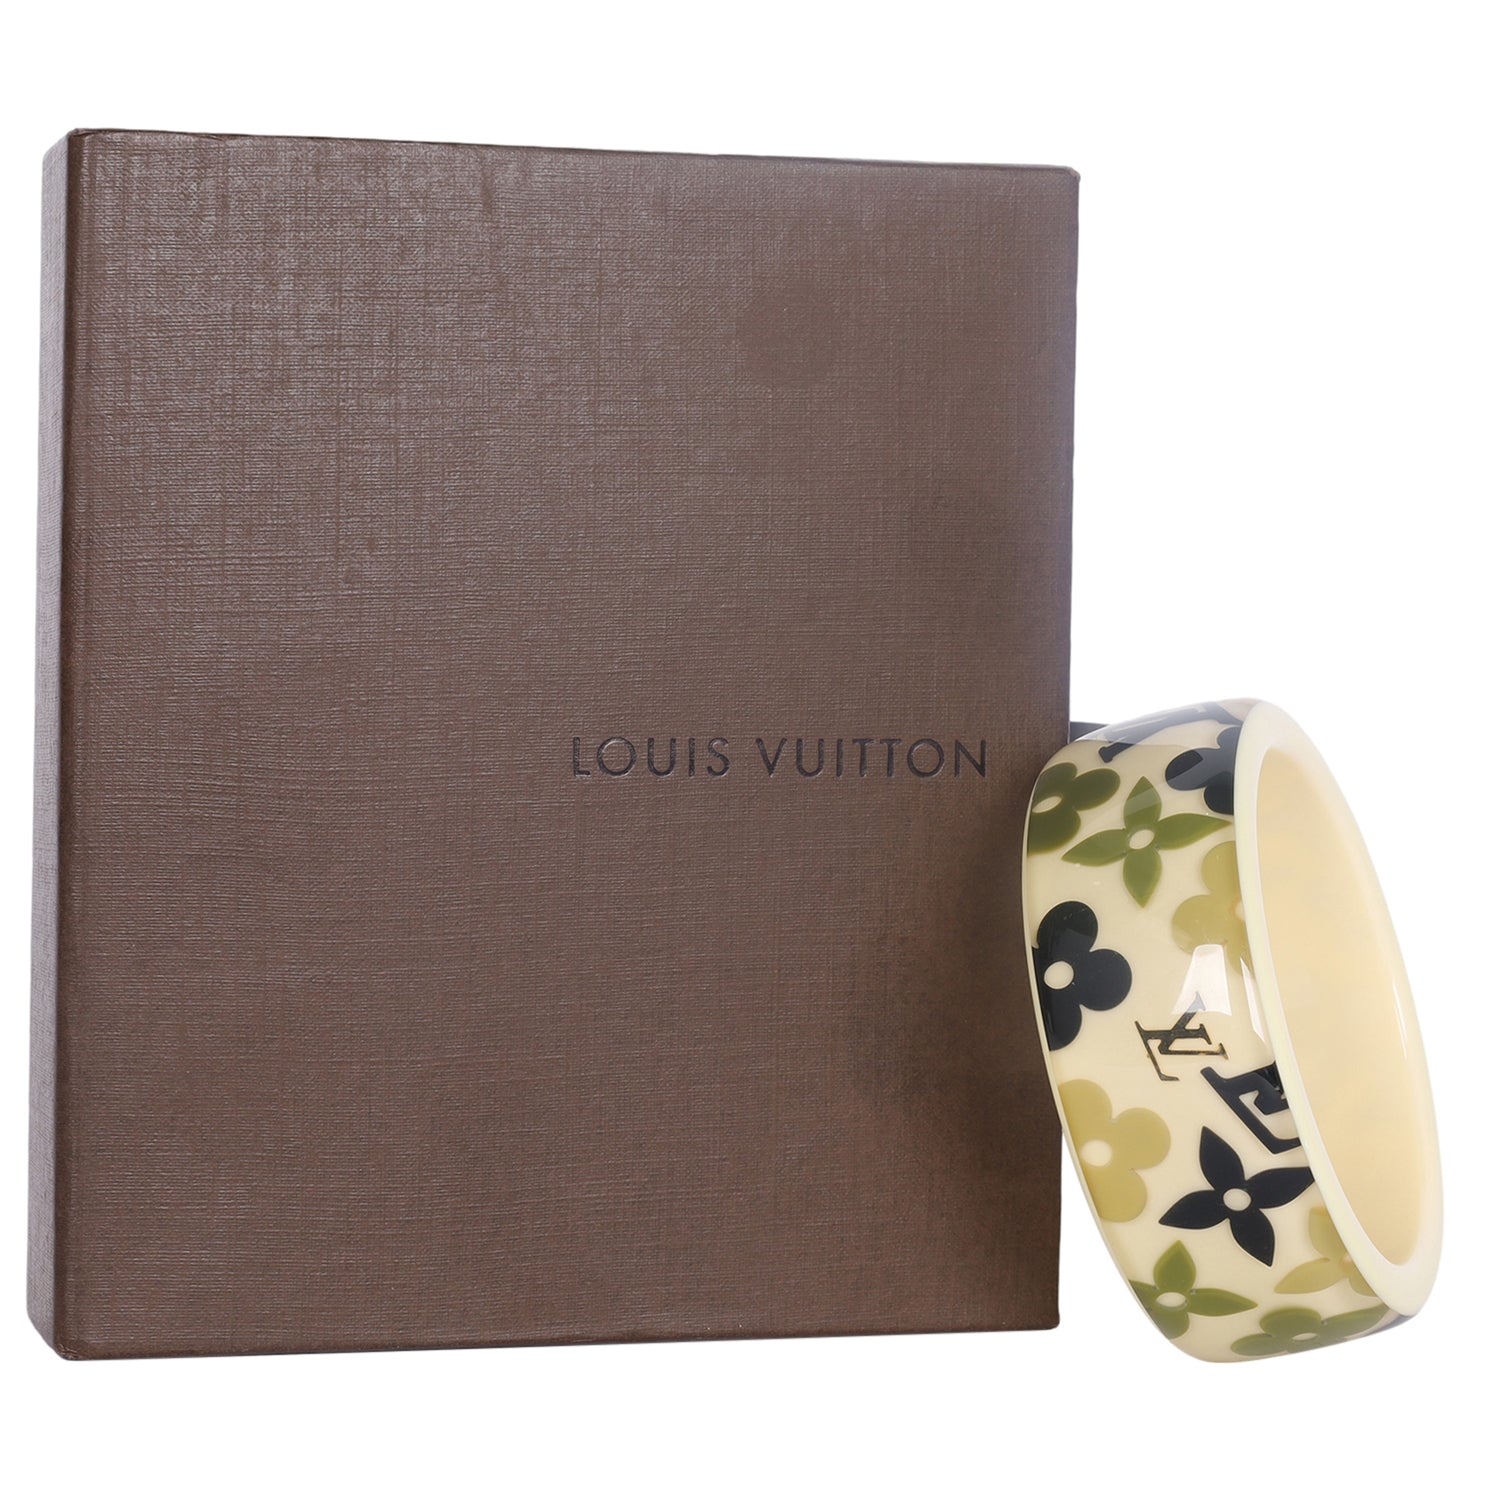 Buy Authentic Pre-owned Louis Vuitton Monogram Inclusion Bracelet